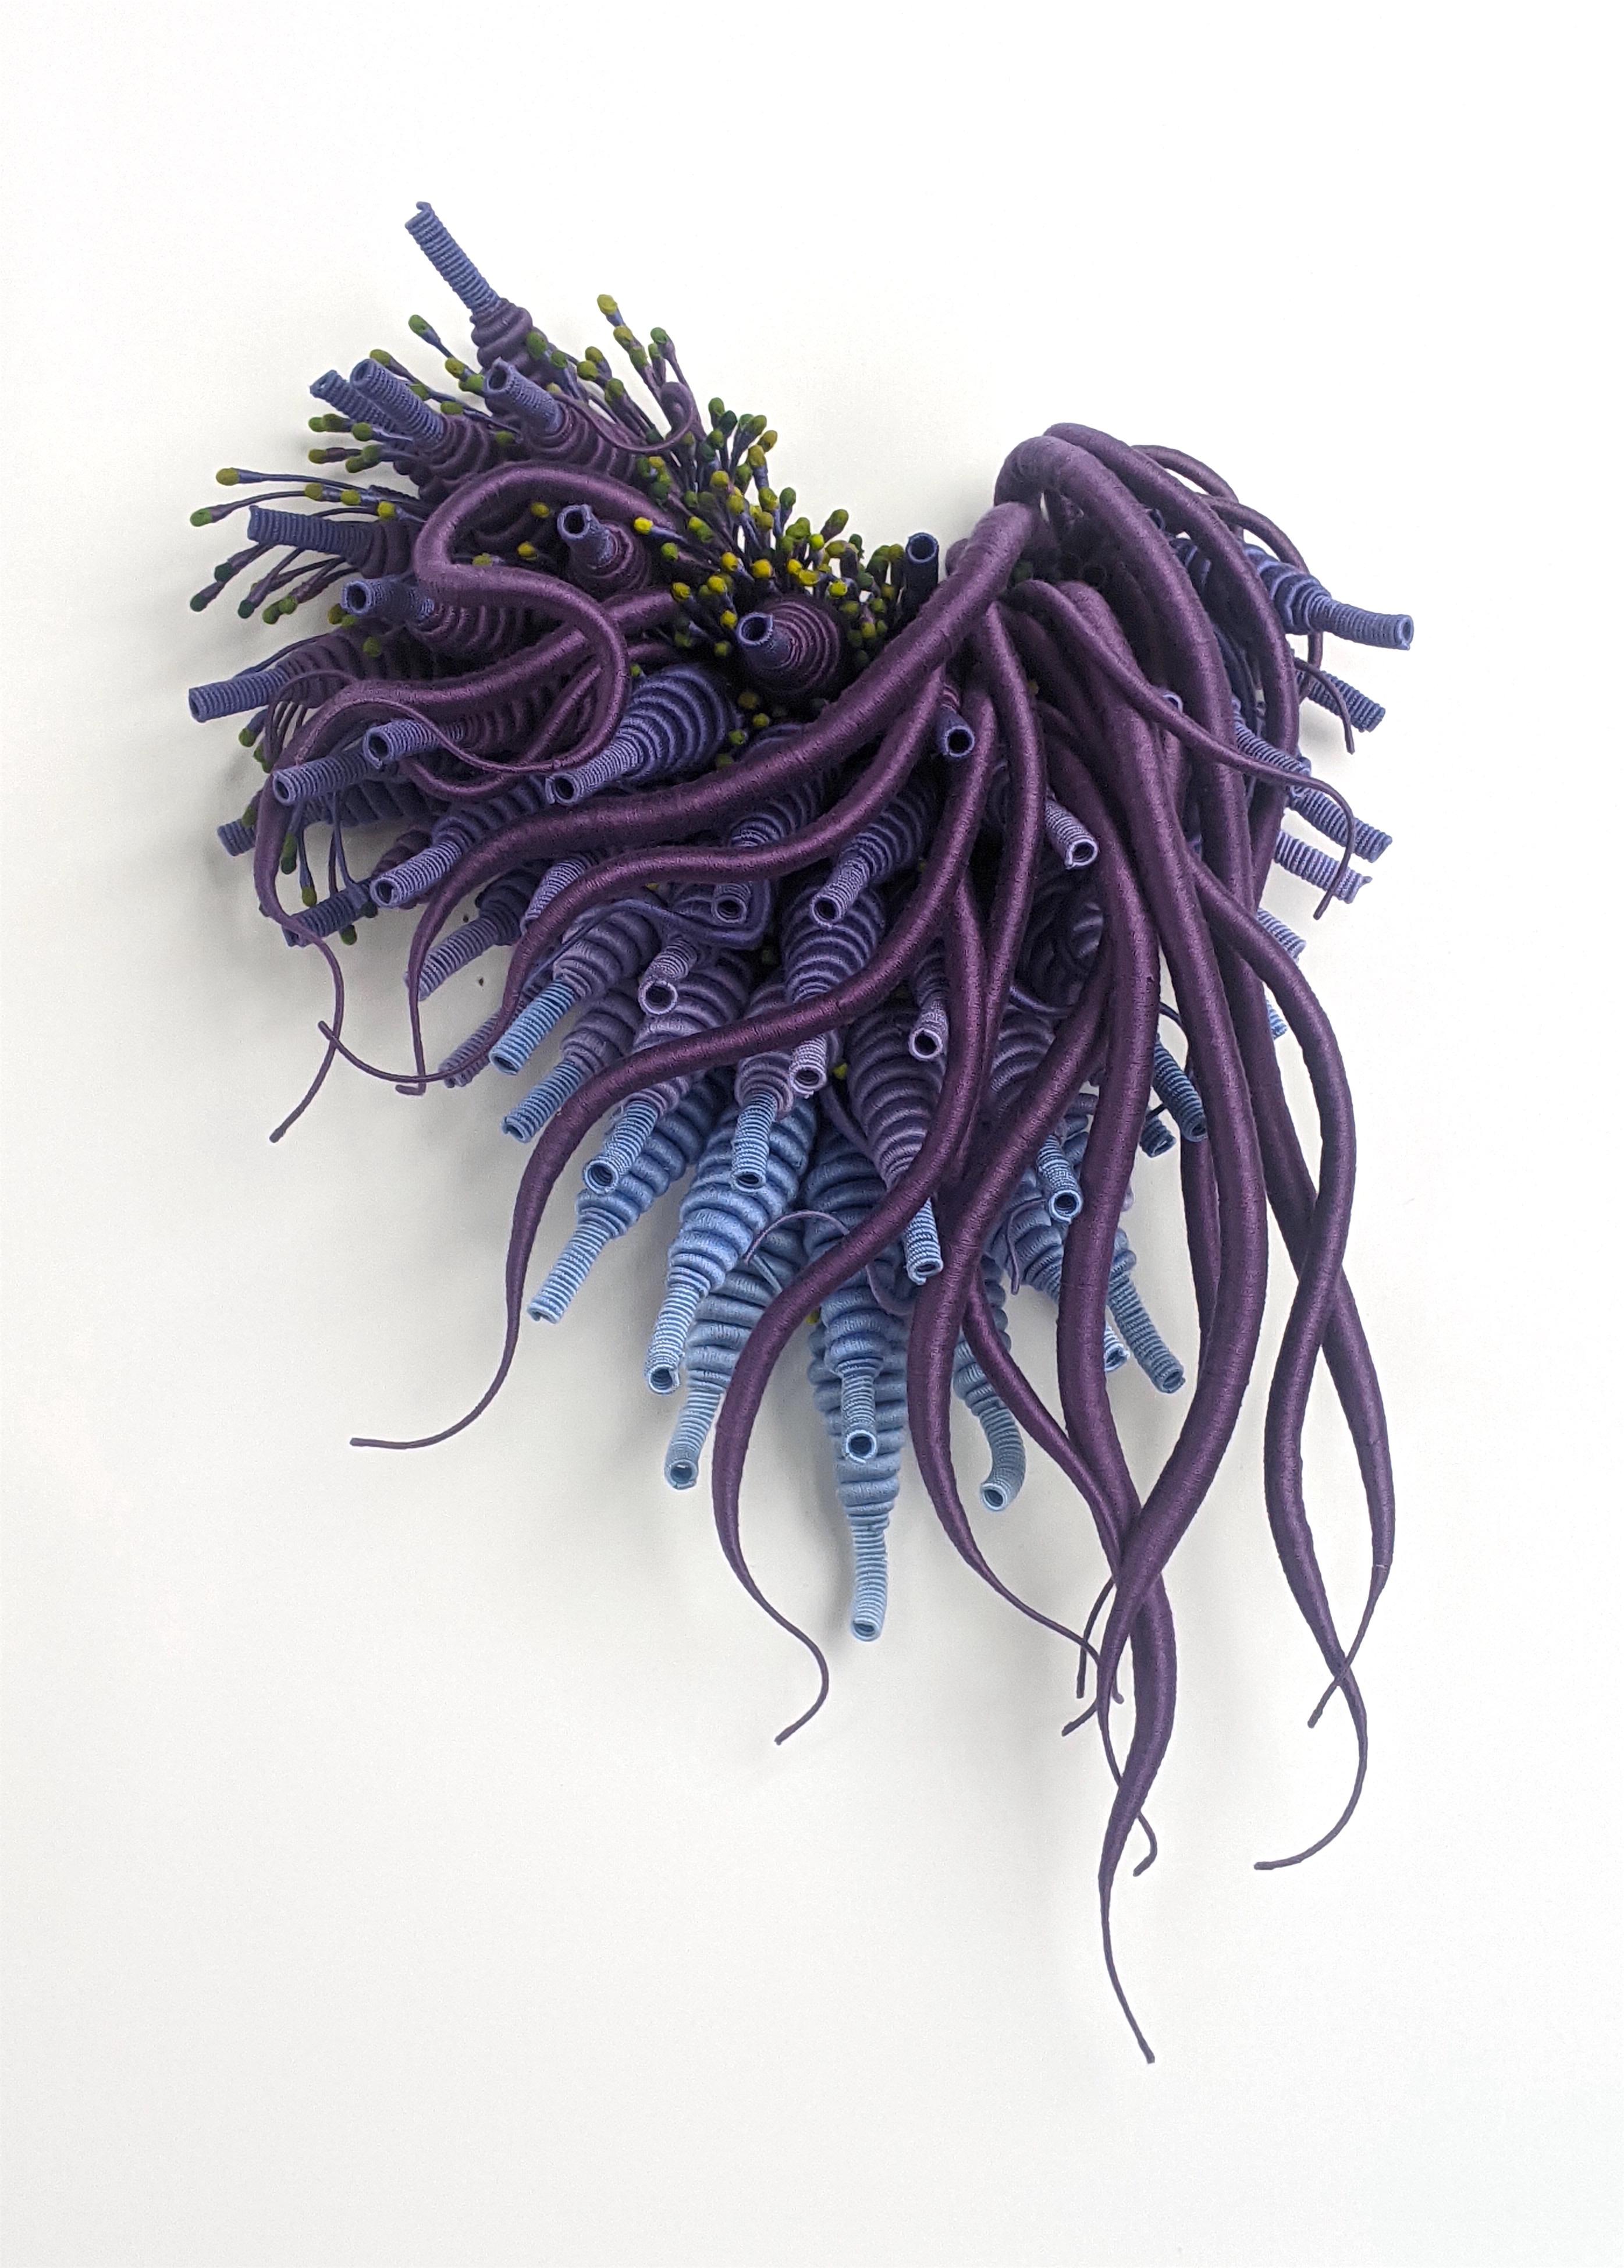 Specimen 24, Sculpture en fibre teintée à la main pourpre et bleu, inspirée de la nature marine, encadrée